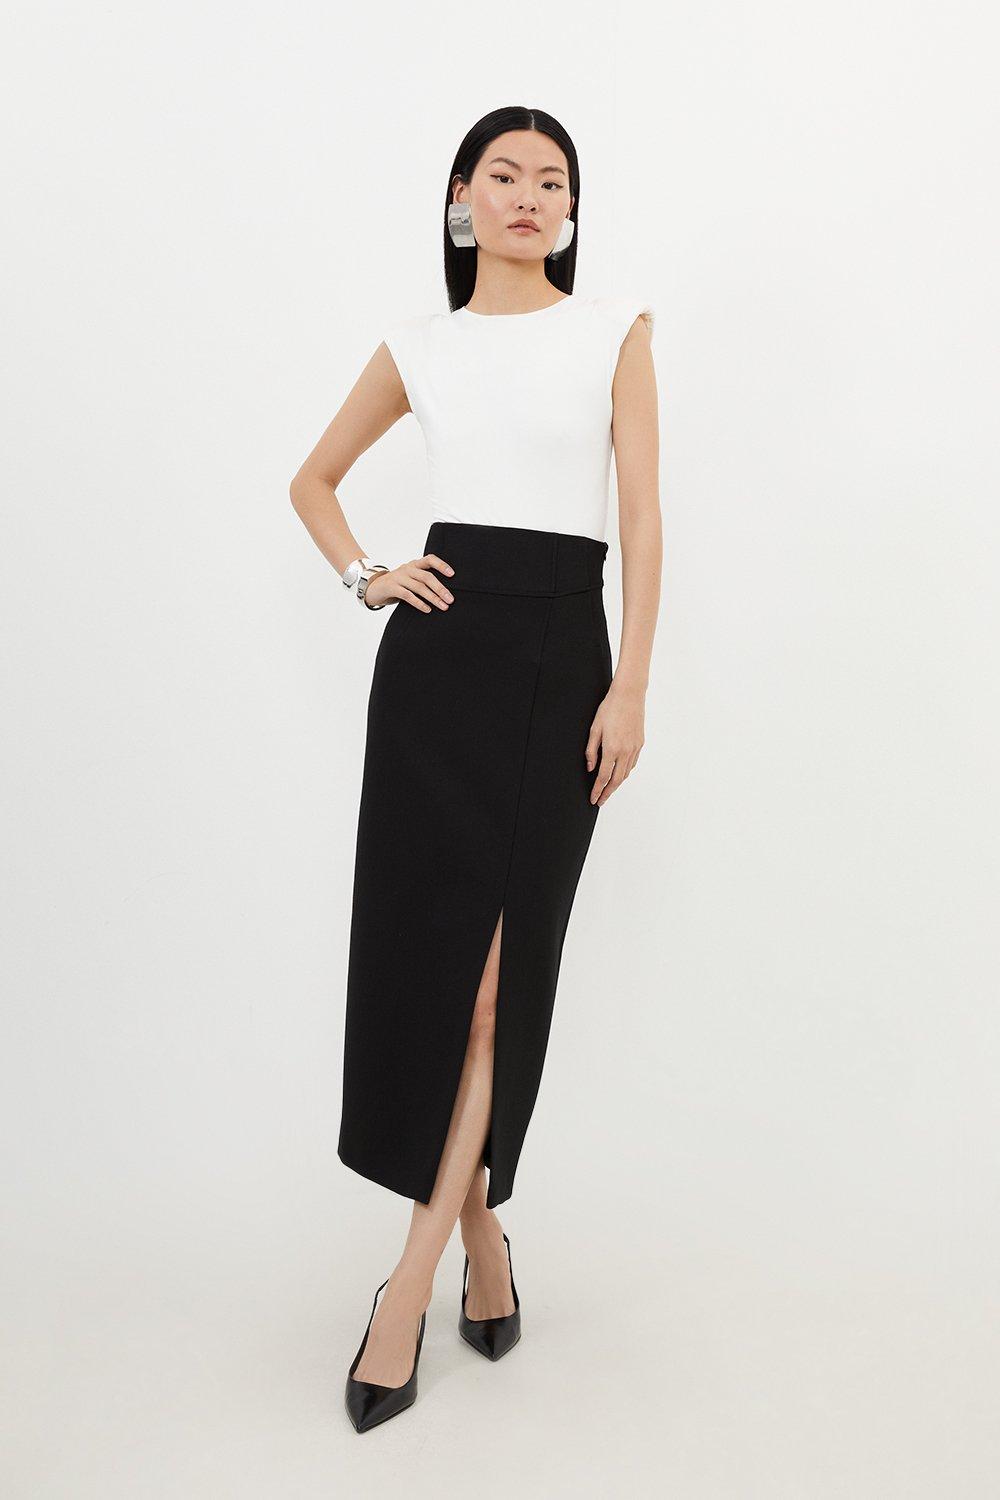 Компактная эластичная юбка-карандаш миди с боковым разрезом Karen Millen, черный простая юбка женская черная юбка миди с высокой талией и боковым разрезом модель 2021 года корейская мода эластичная облегающая юбка трапе